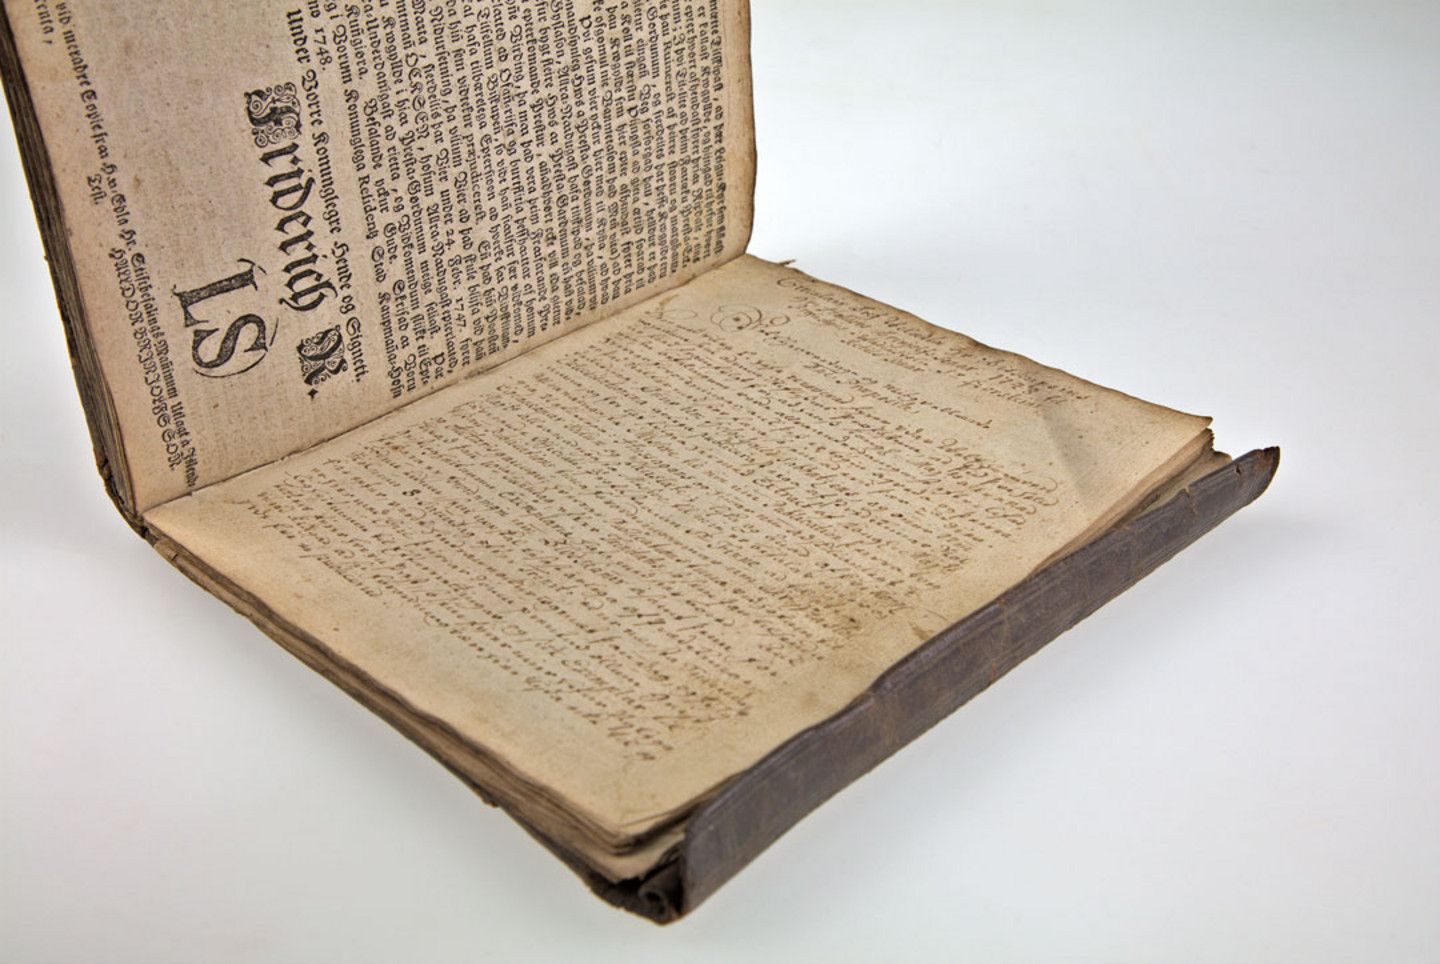 Foto eines historischen, beschädigten Buches aus dem Jahr 1736-49: Sammelband mit 19 Drucken Hólar 1736-49, aus der Bibliothek von Heinrich Erkes mit einem isländischen Rolleinband, 1686. Signatur: AD+I120 